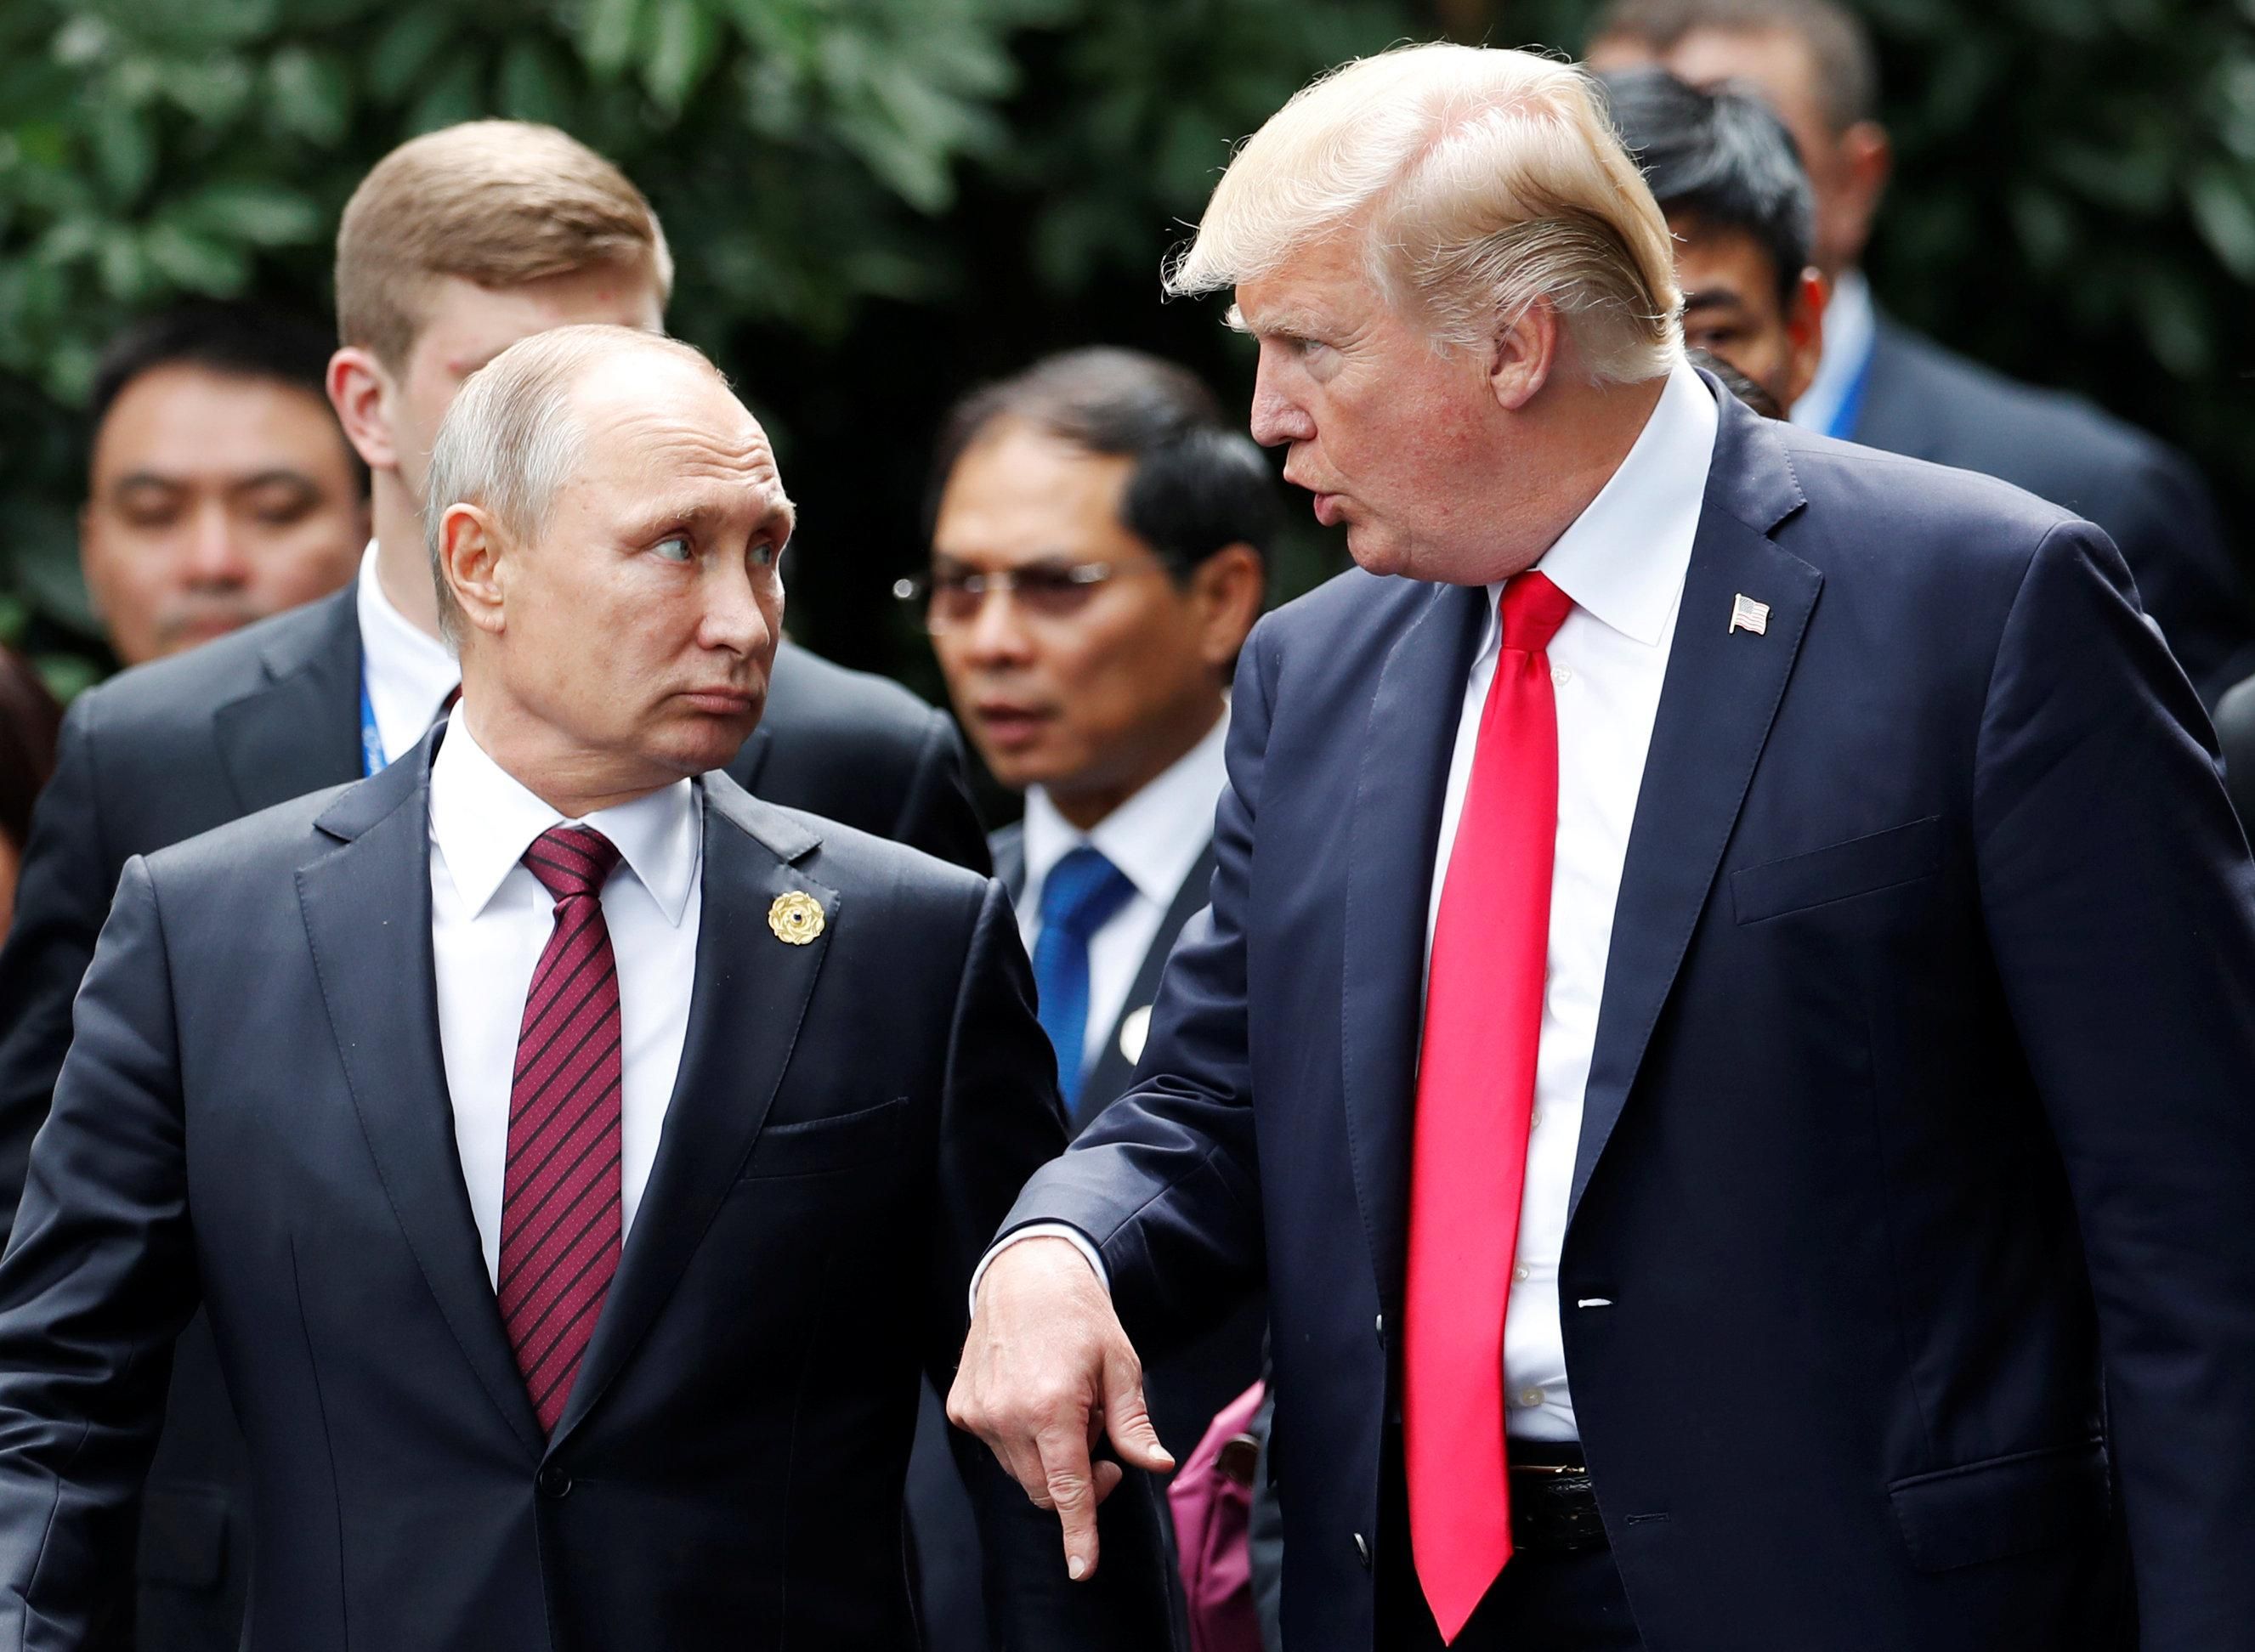 В 2018 году отношения между США и Россией будут еще более напряженными, – эксперт